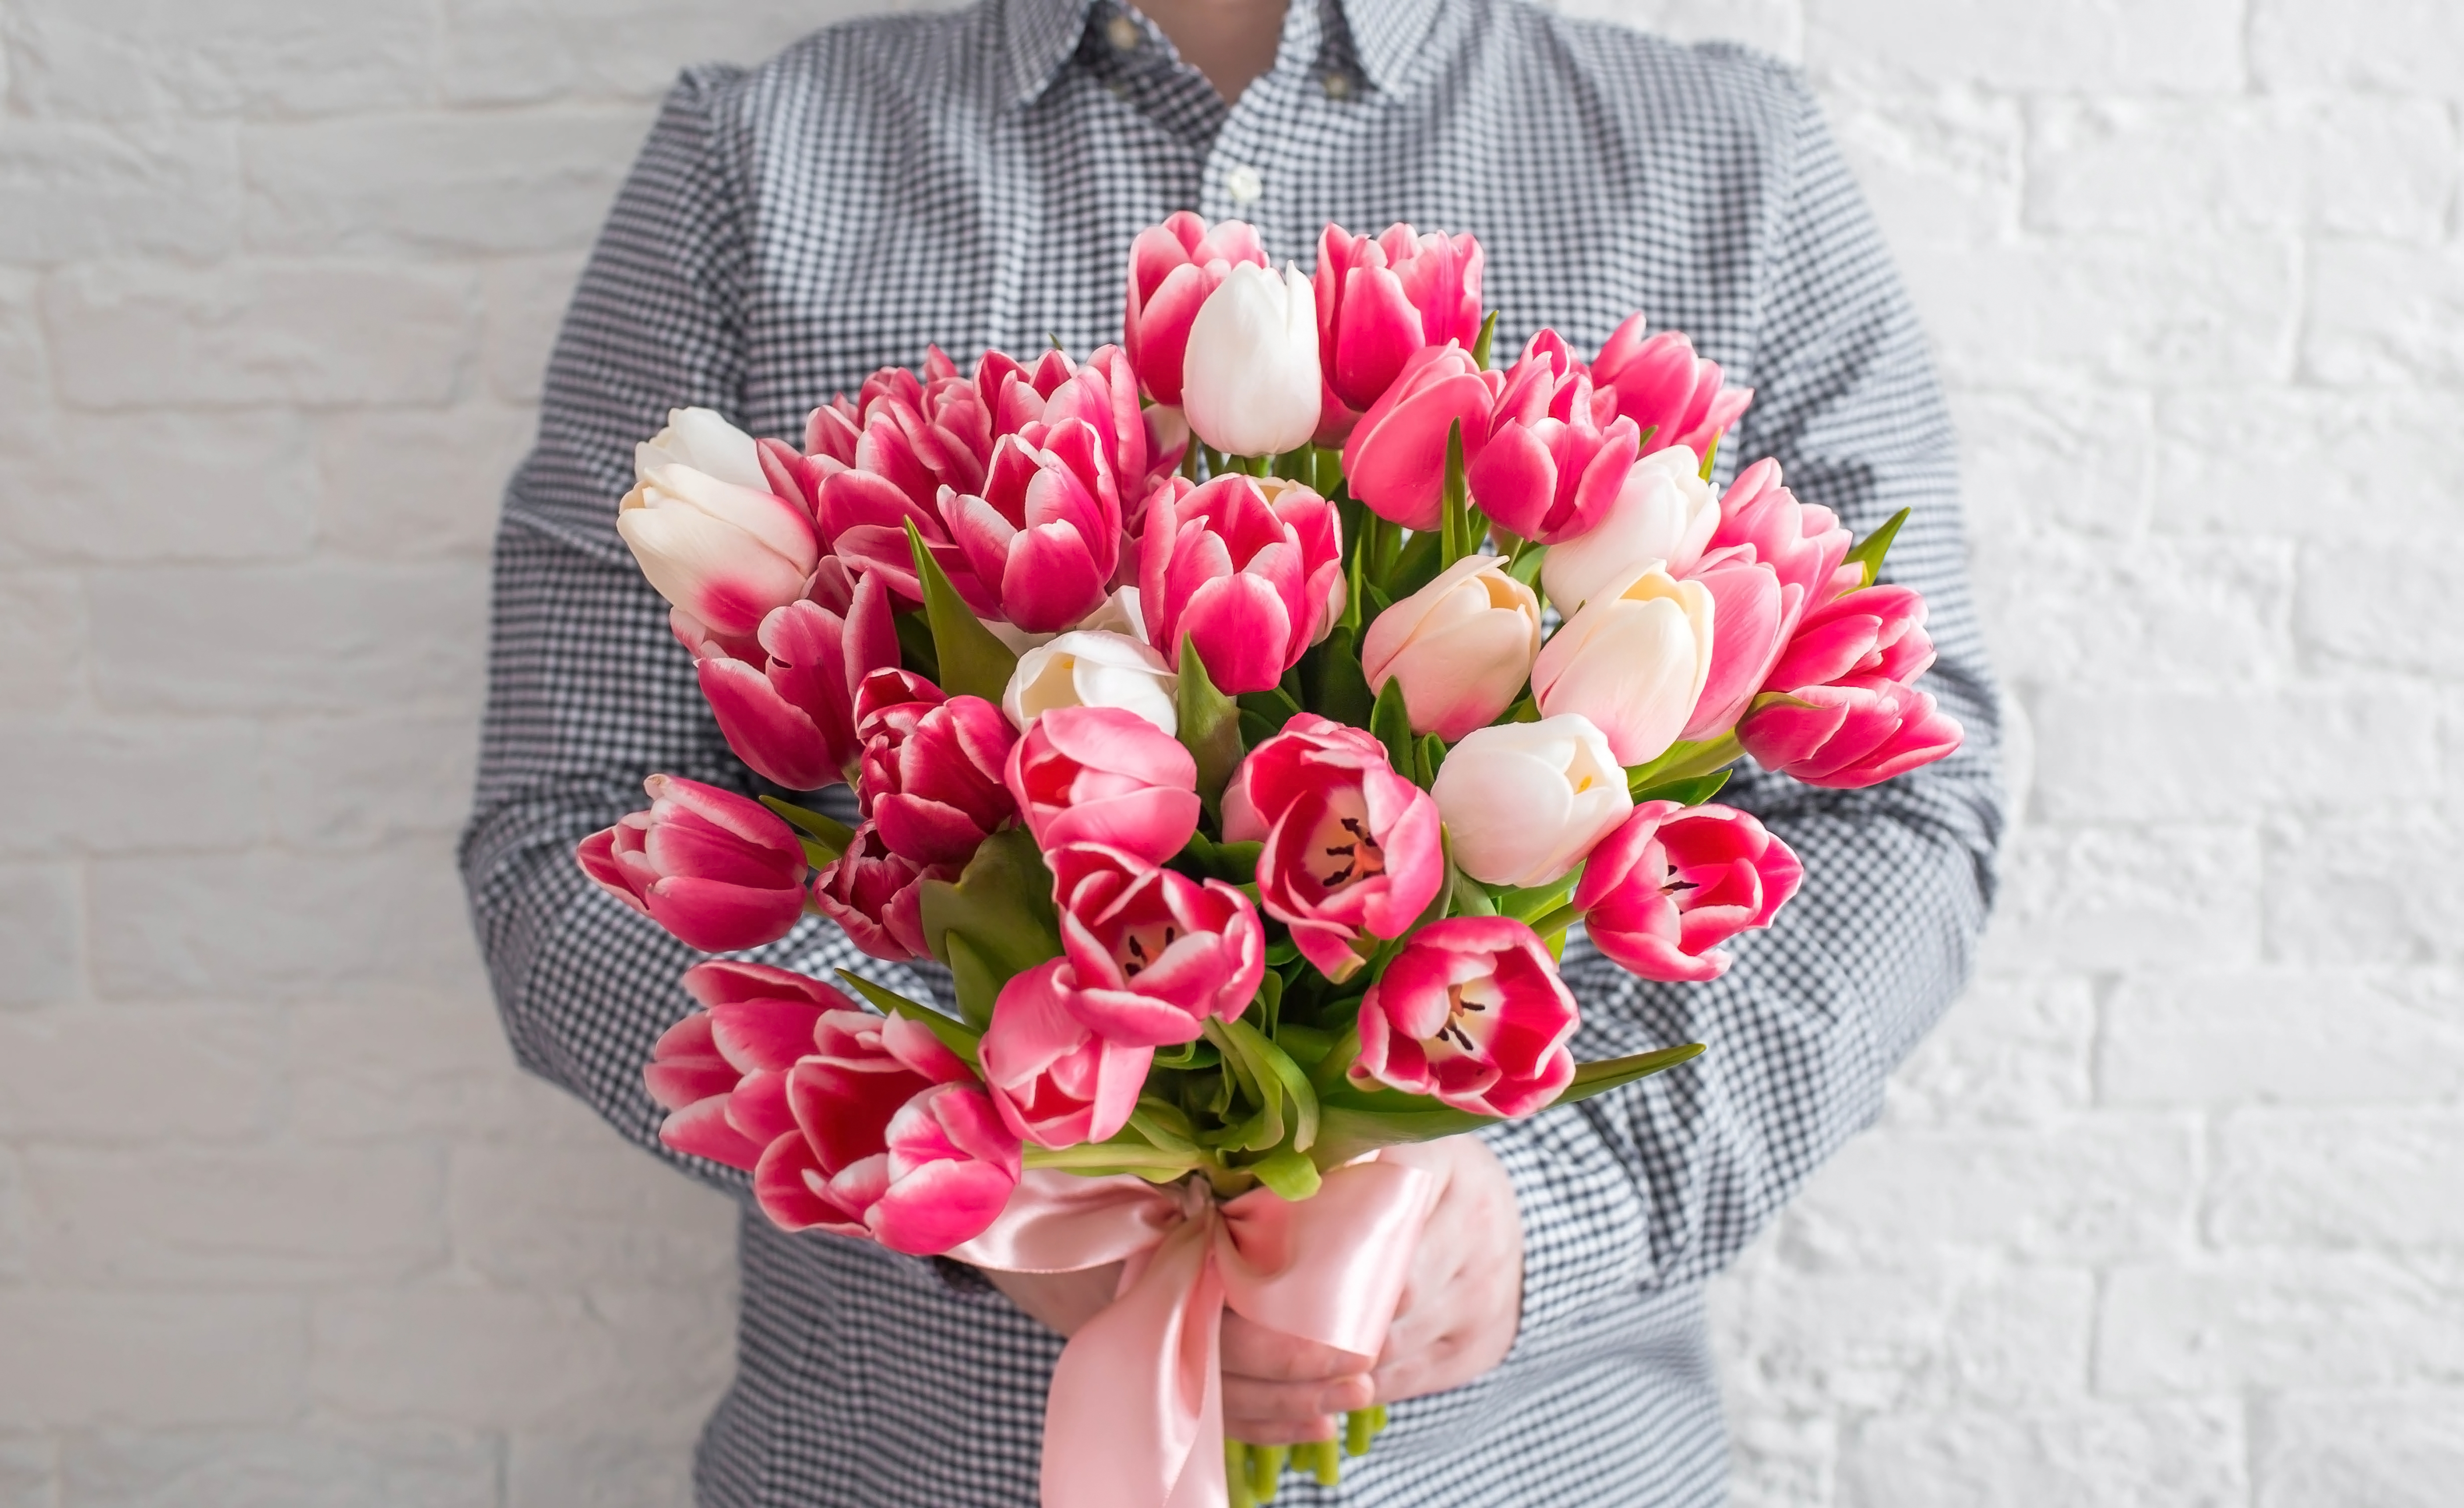 Un homme tenant un bouquet de tulipes blanches et roses | Source : Shutterstock